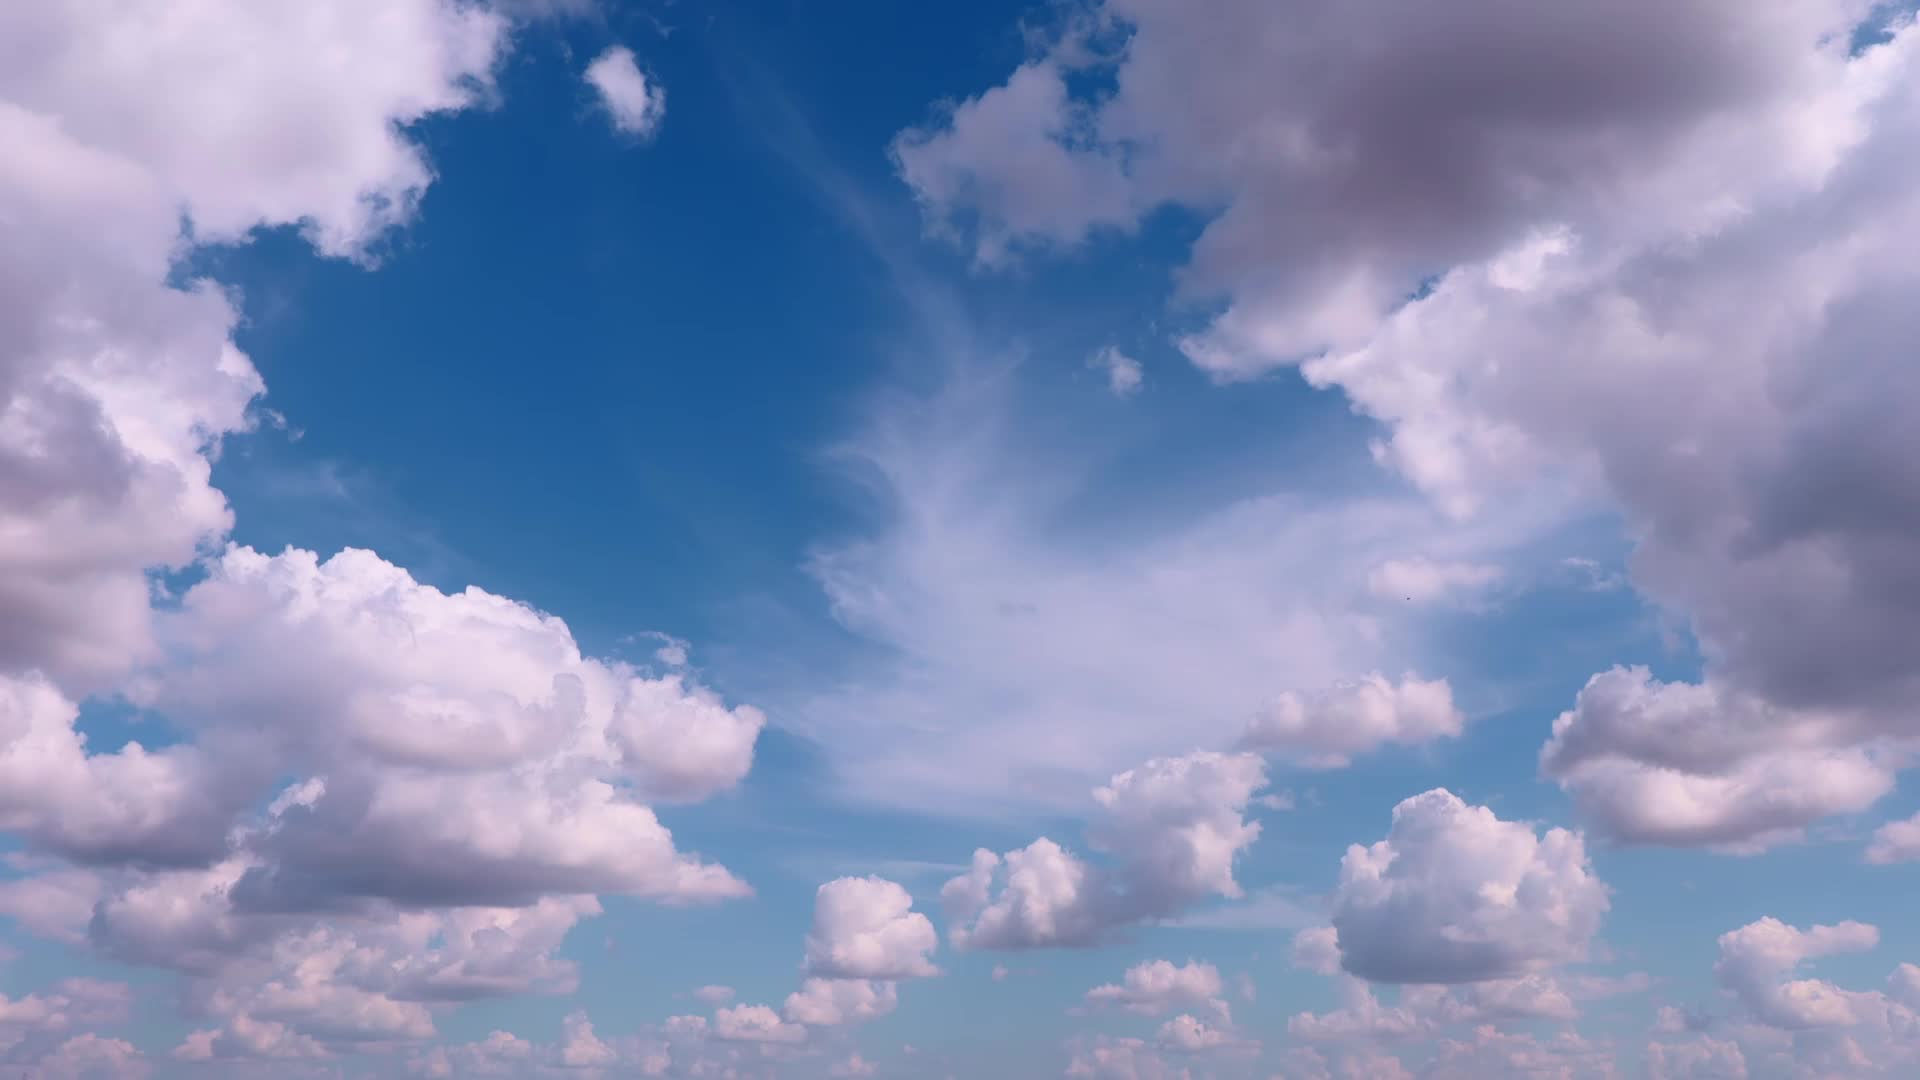 Những bức ảnh chụp về những đám mây di chuyển quanh trời sẽ khiến bạn cảm thấy như đang chứng kiến một sự thay đổi không ngừng của không gian trên đầu trời. Hãy thưởng thức và tận hưởng sự đa dạng và tuyệt đẹp của thiên nhiên.